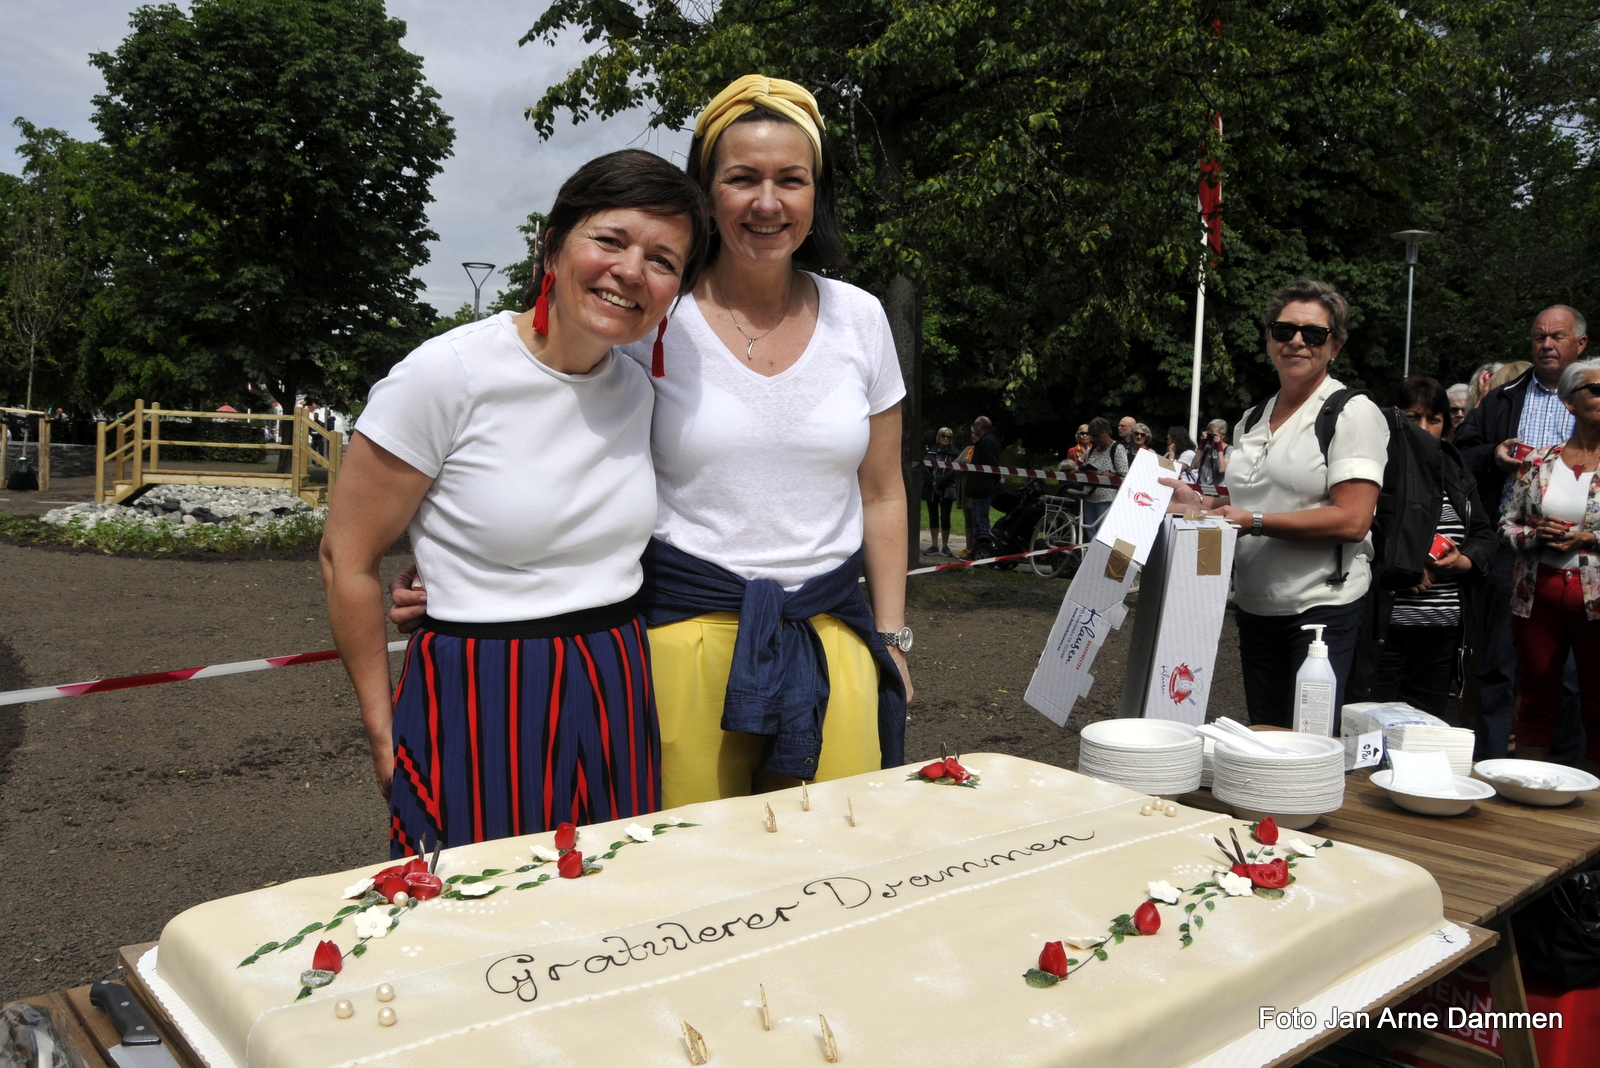 Helle-Stine Høvås og Louise Rustgard fra Byen Vår Drammen serverte kake. Foto Jan Arne Dammen